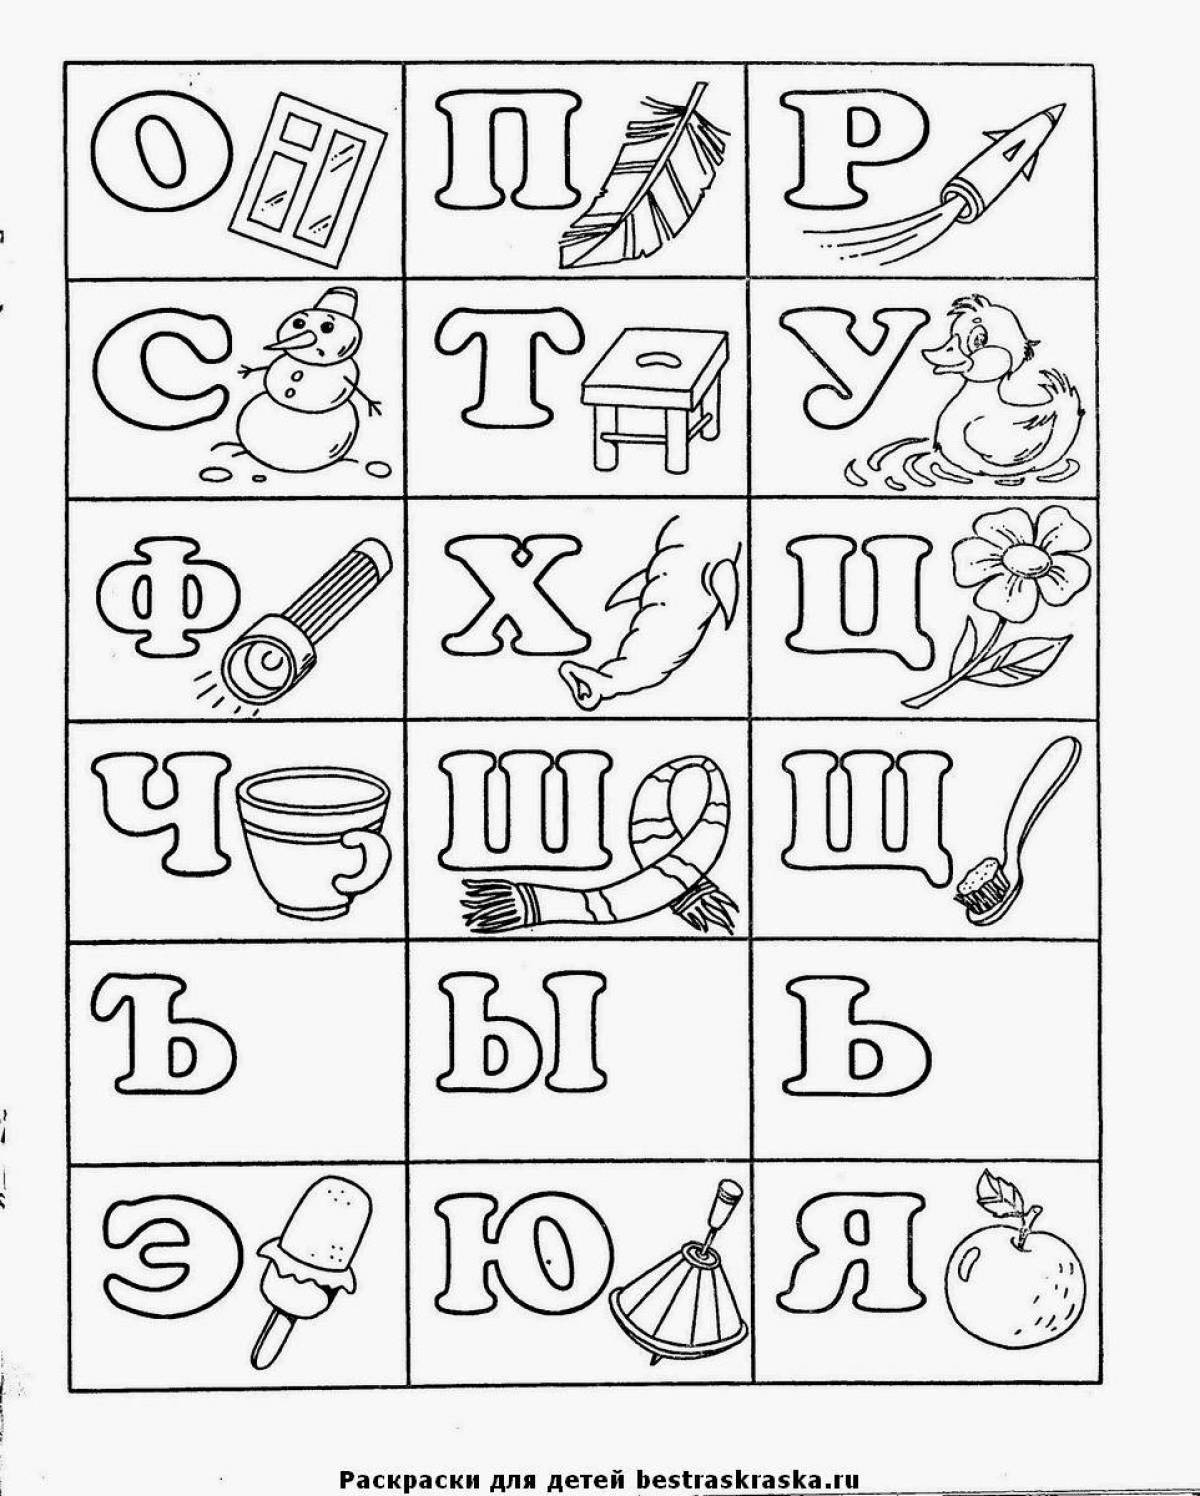 Привлекательный русский алфавит лора раскраска